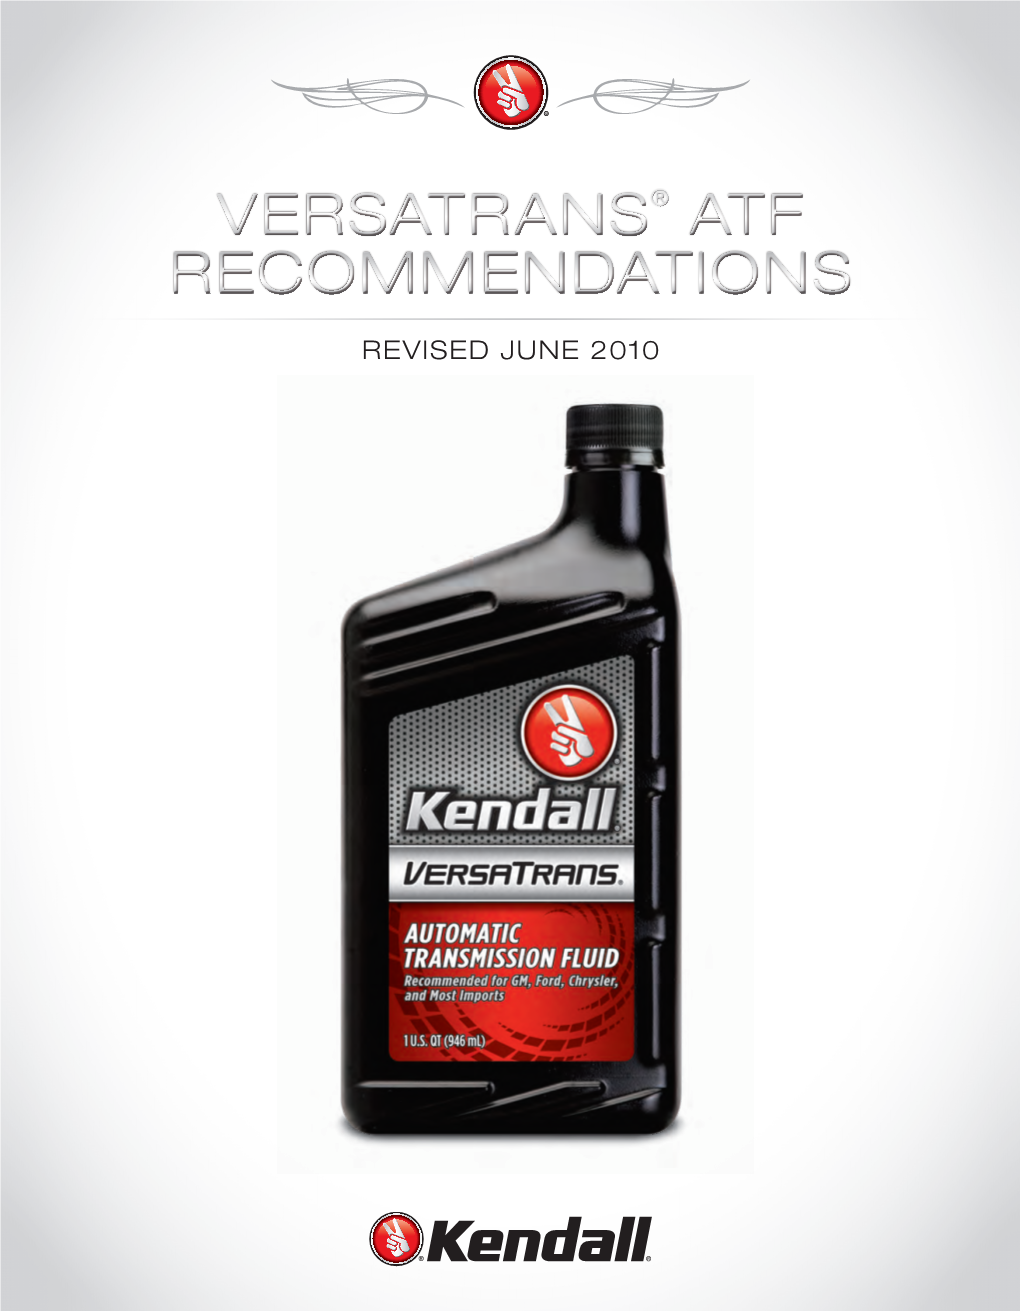 Versatrans® ATF Recommendations